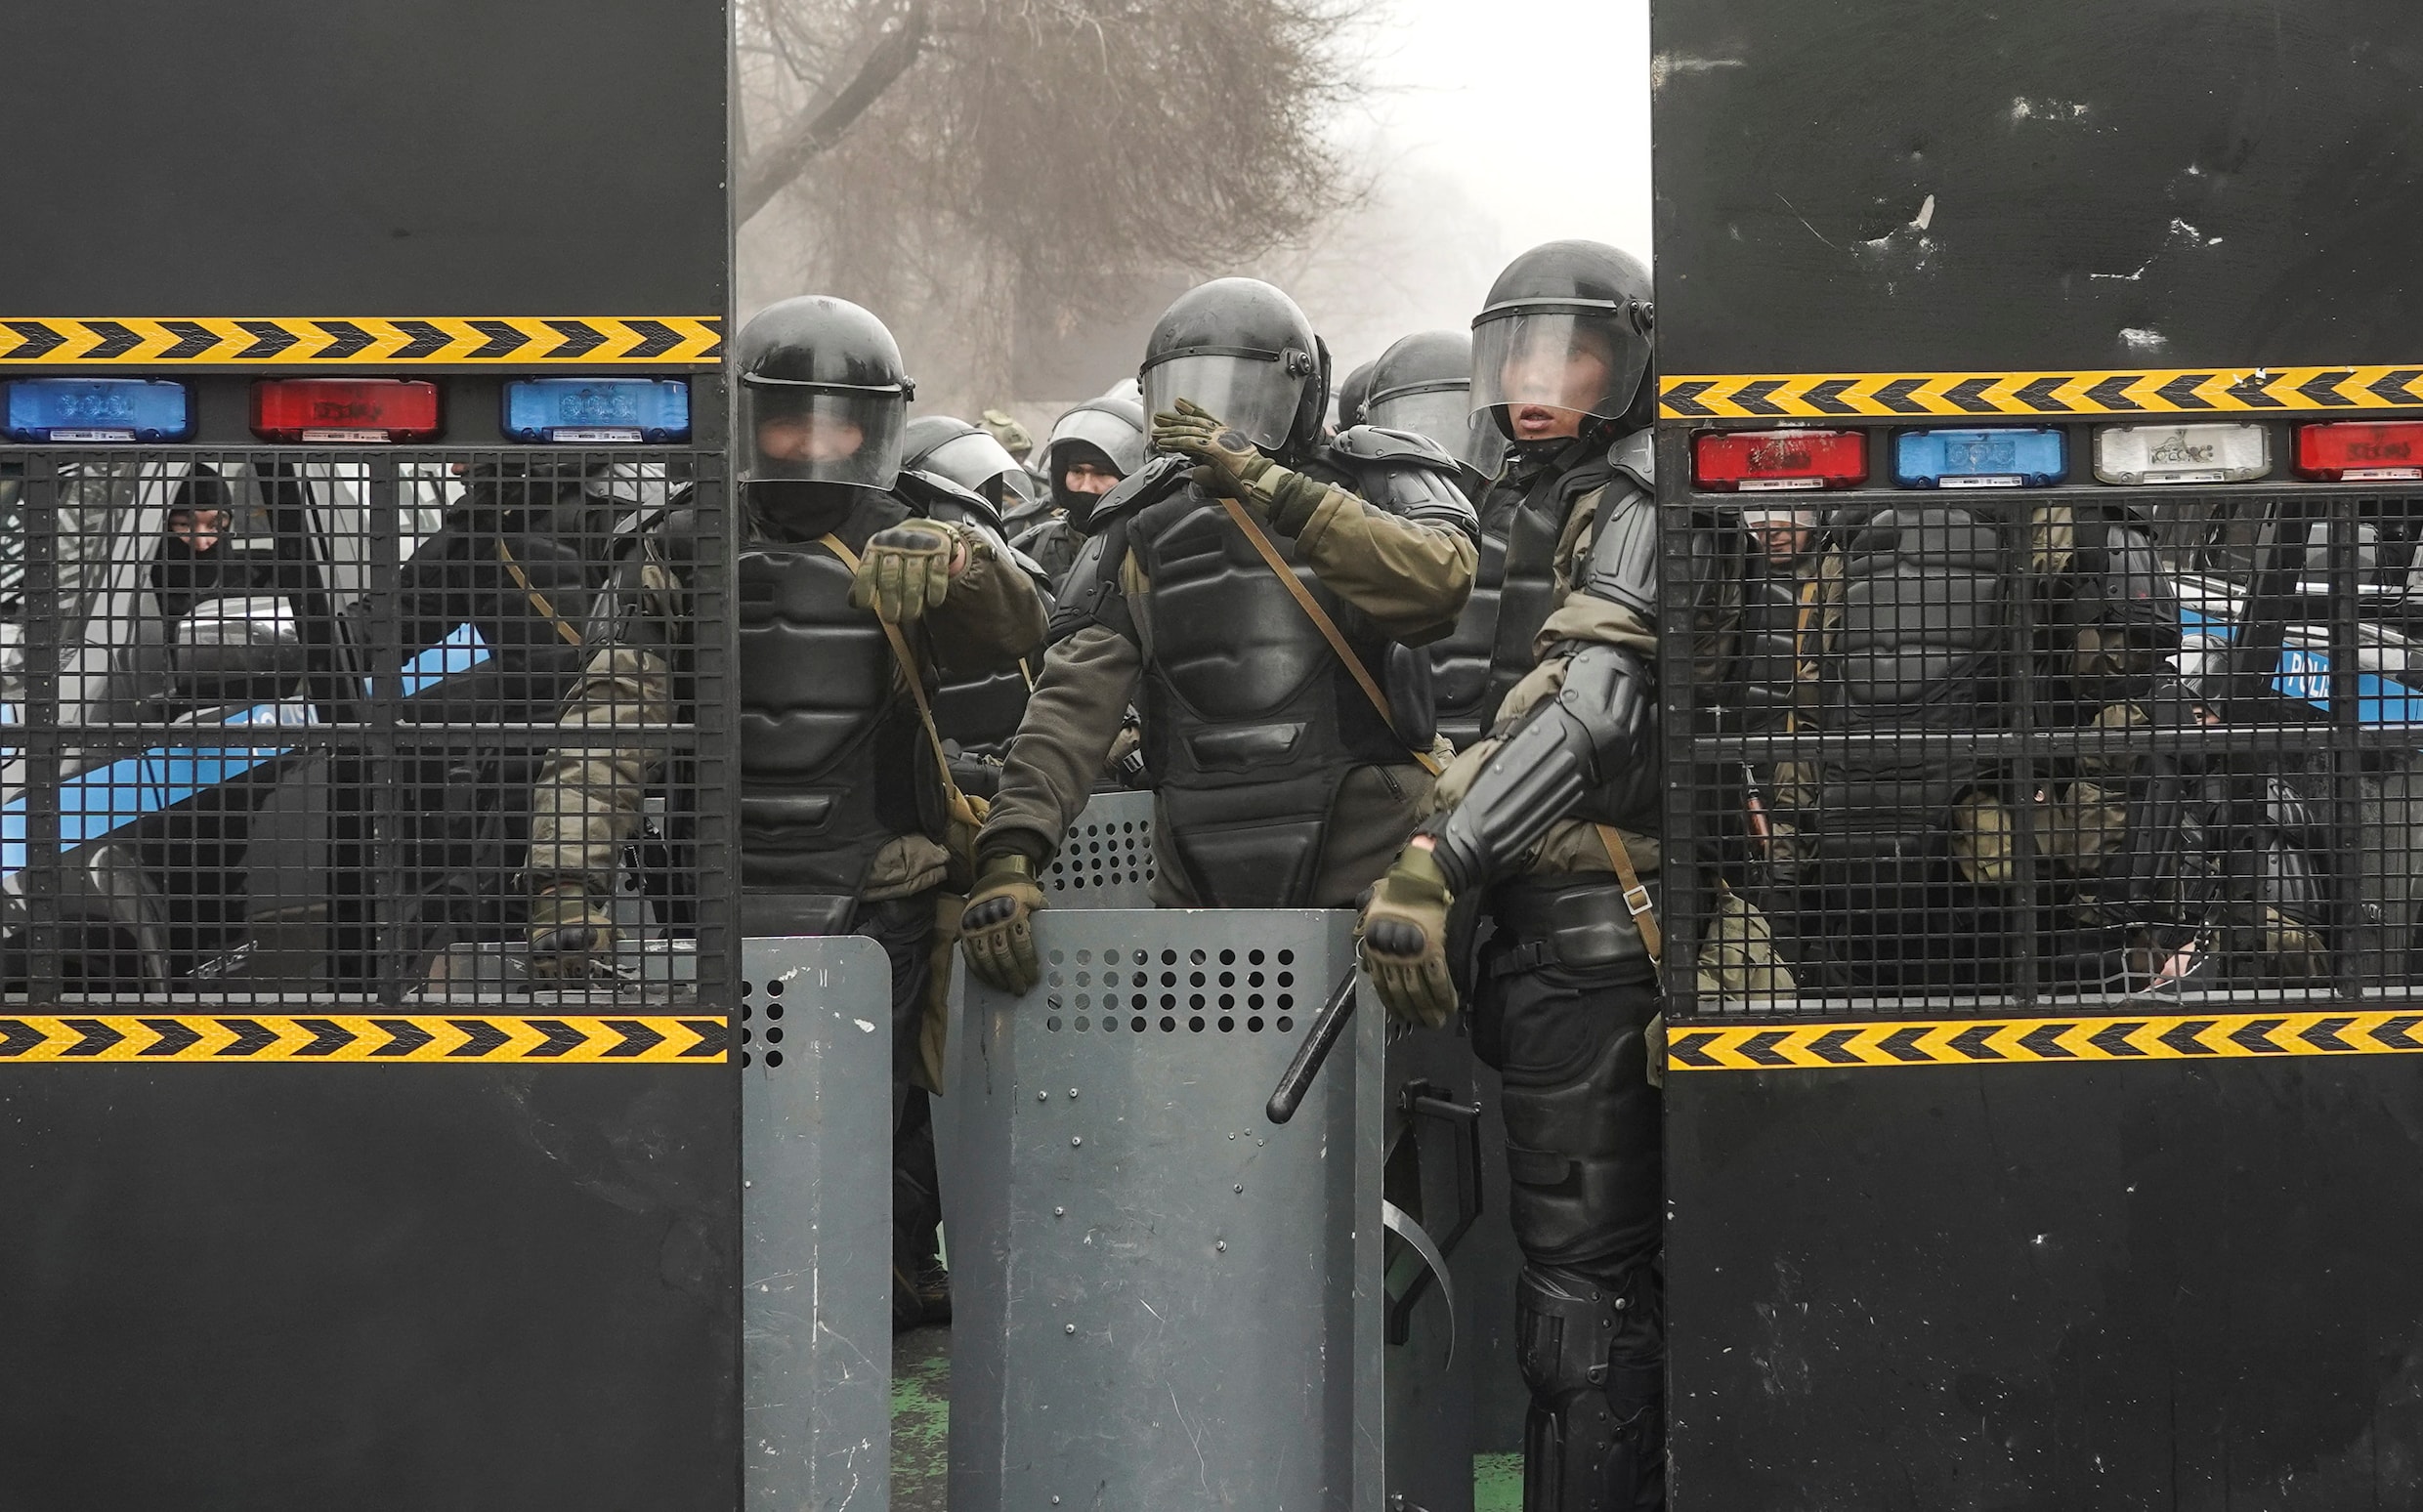 Grote protesten in Kazachstan: politie meldt doden onder betogers, eerste Russische militairen aangekomen